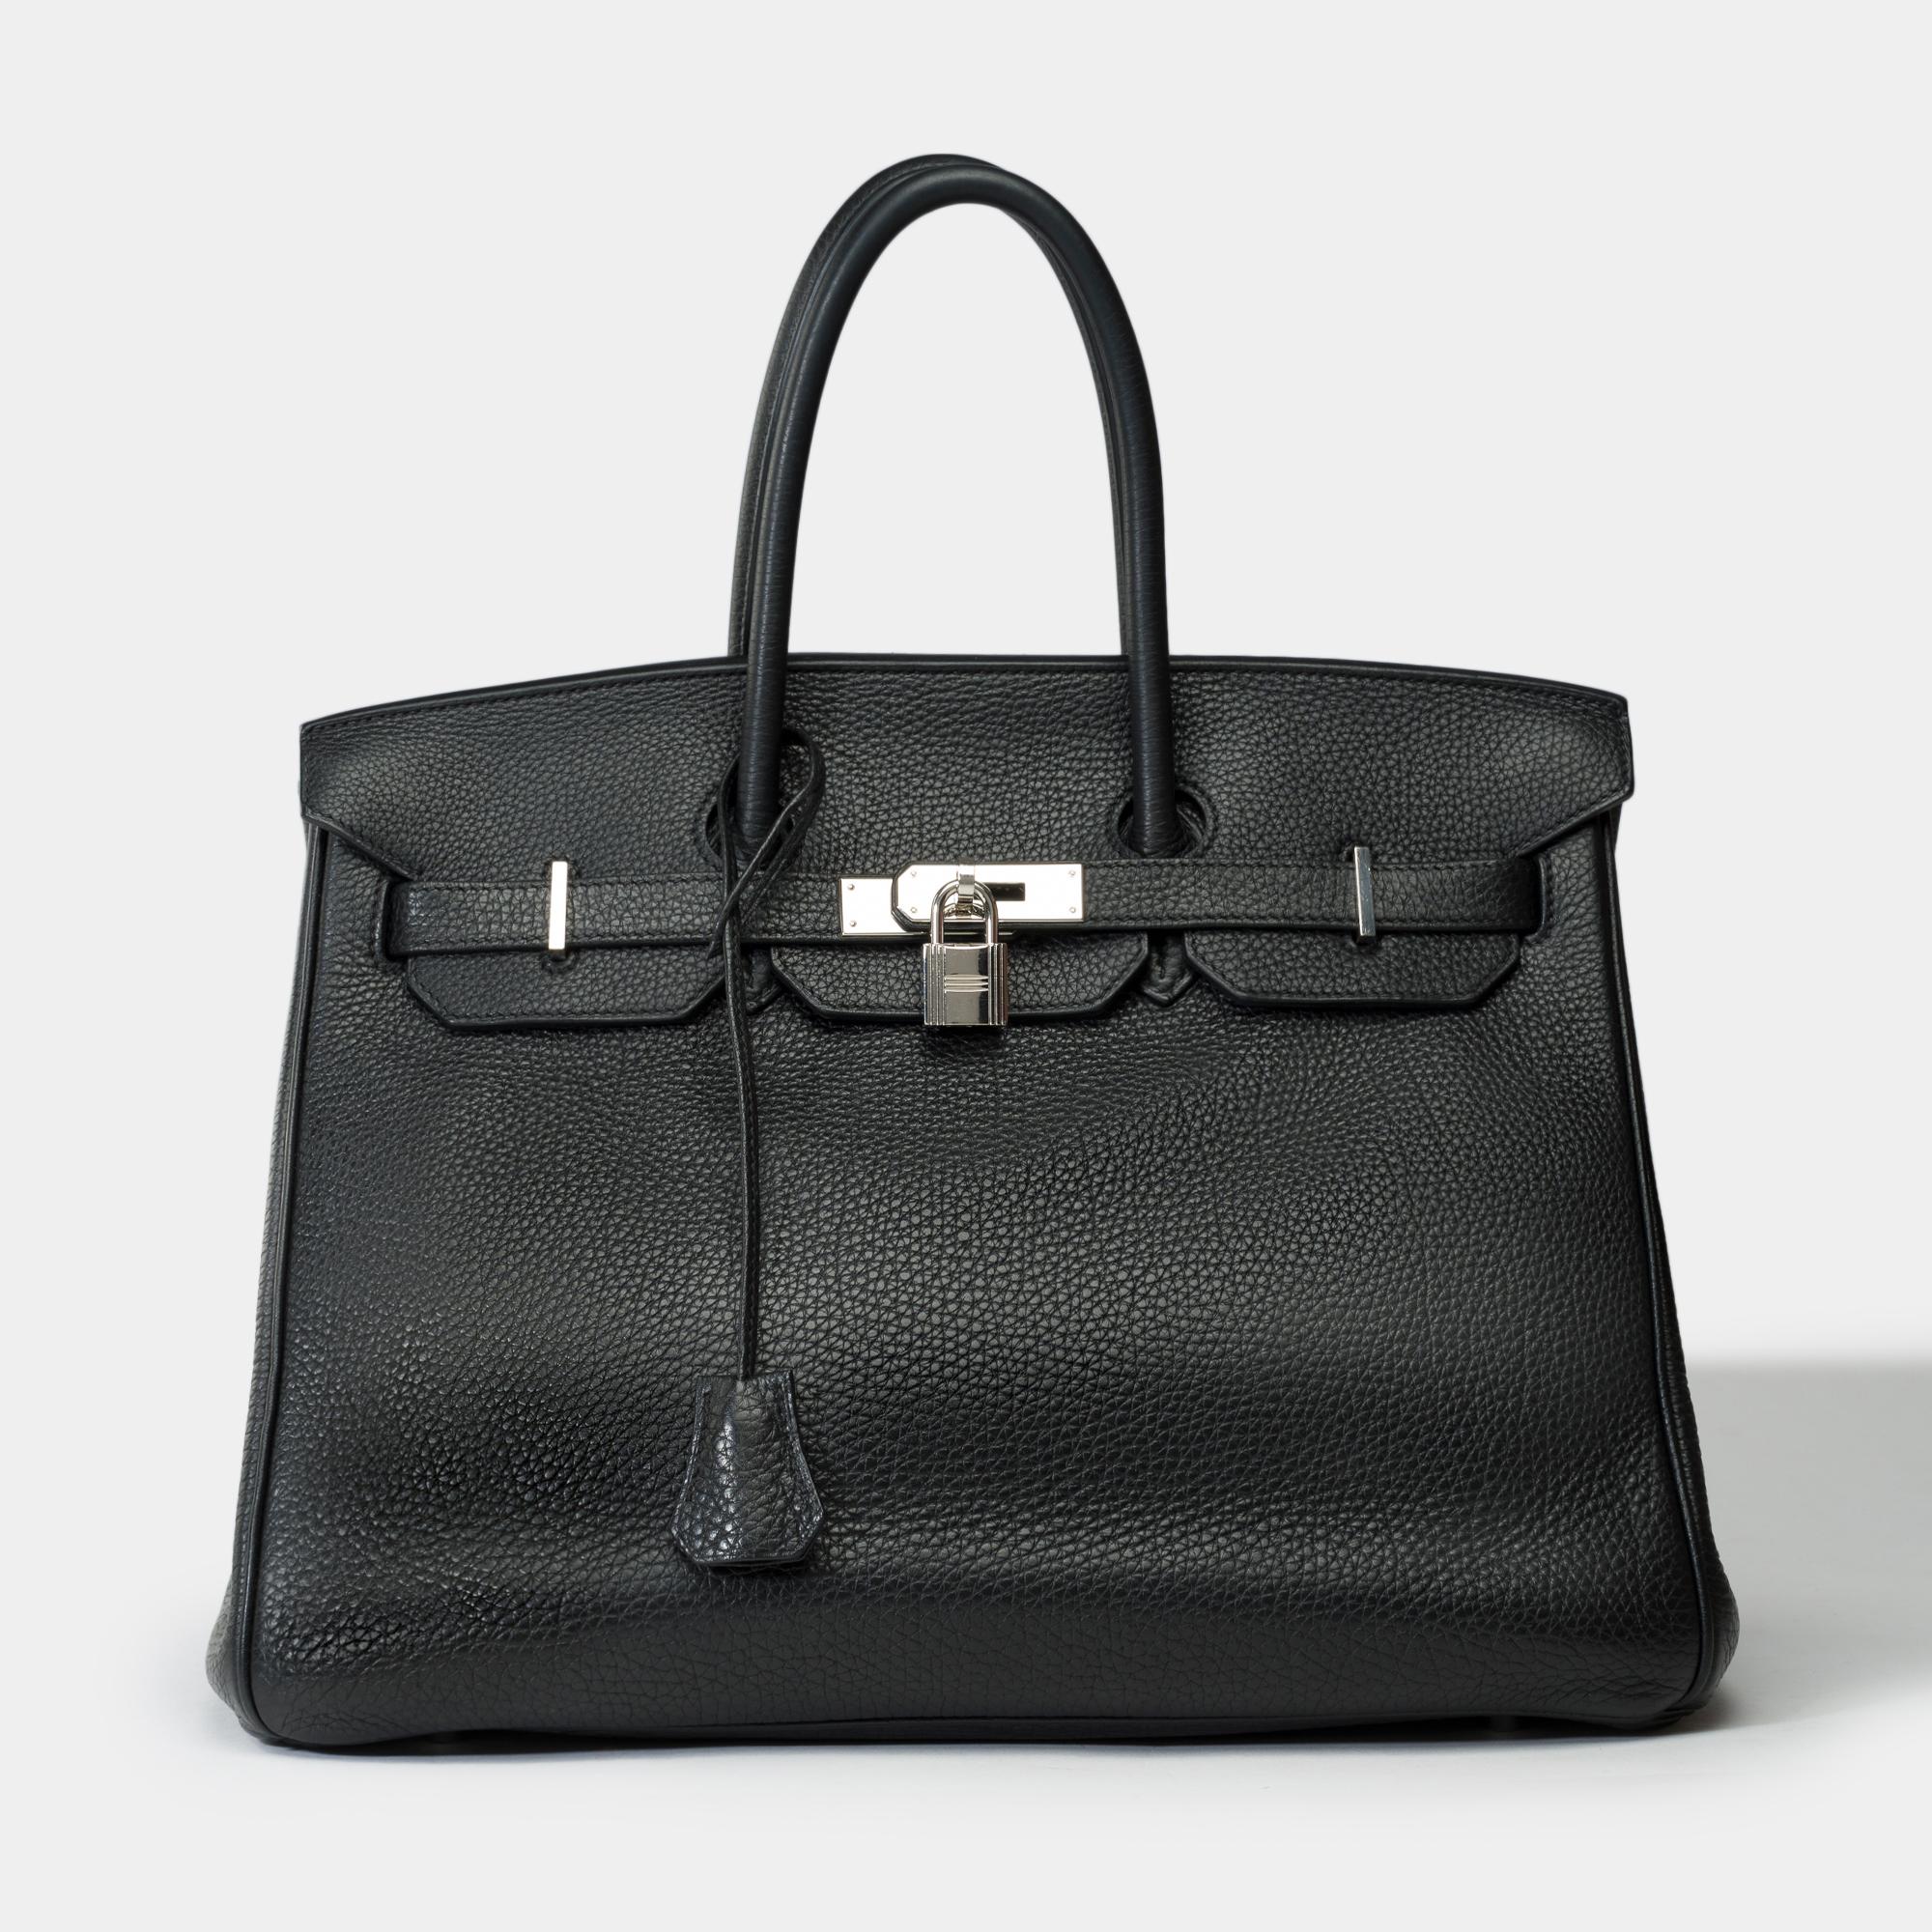 Superbe sac à main Hermès Birkin 35 en cuir Togo noir, garniture en métal argenté palladium, double poignée en cuir noir permettant un portage à la main.

Fermeture à rabat
Doublure intérieure en cuir noir, une poche zippée, une poche